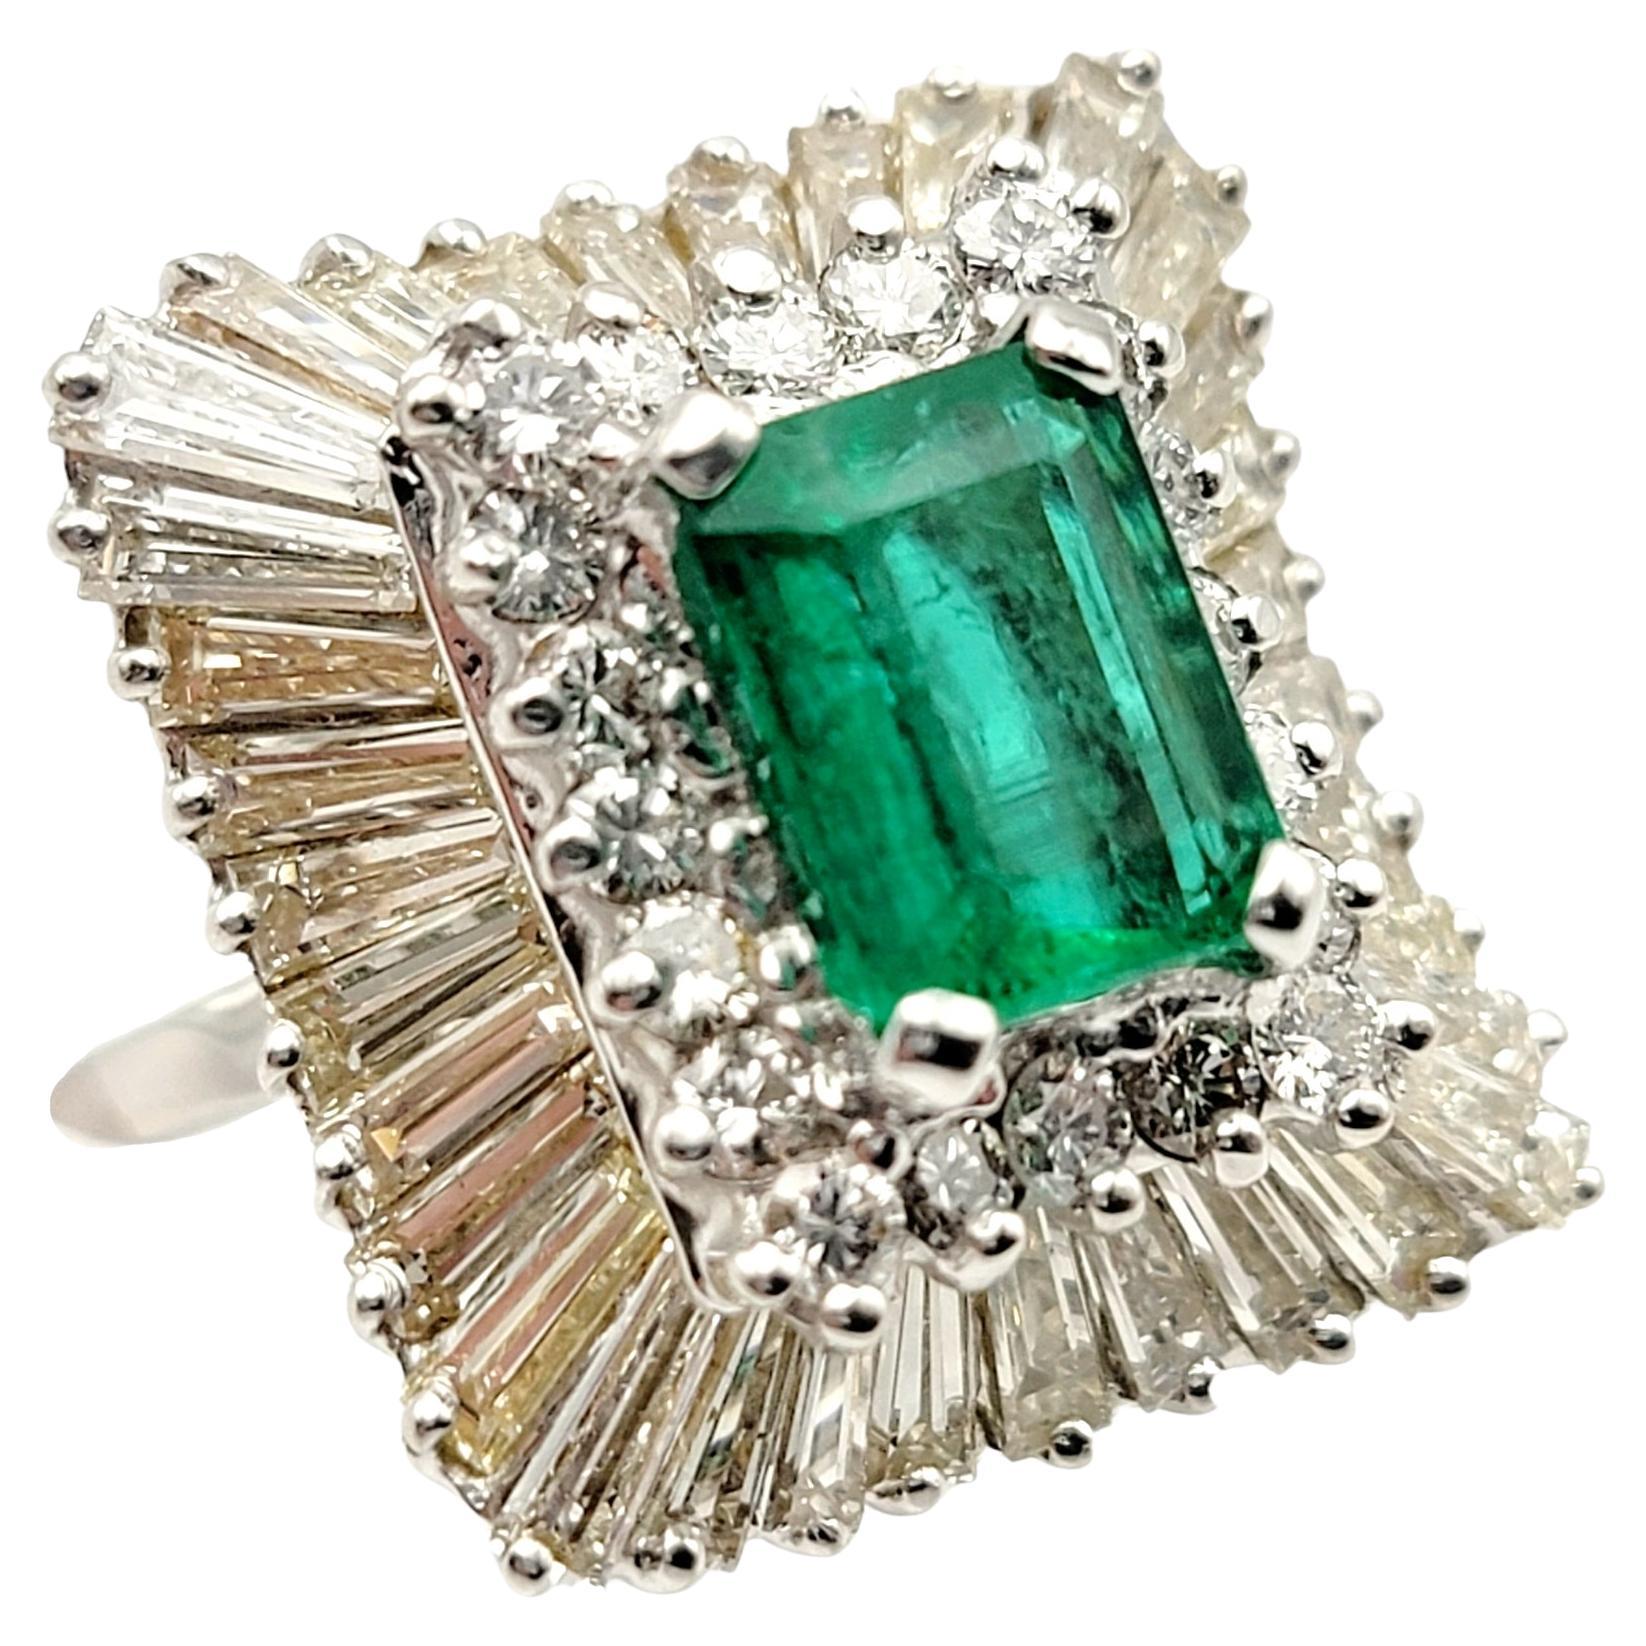 3.07 Carats Total Emerald Cut Emerald and Diamond Cocktail Ring 14 Karat Gold